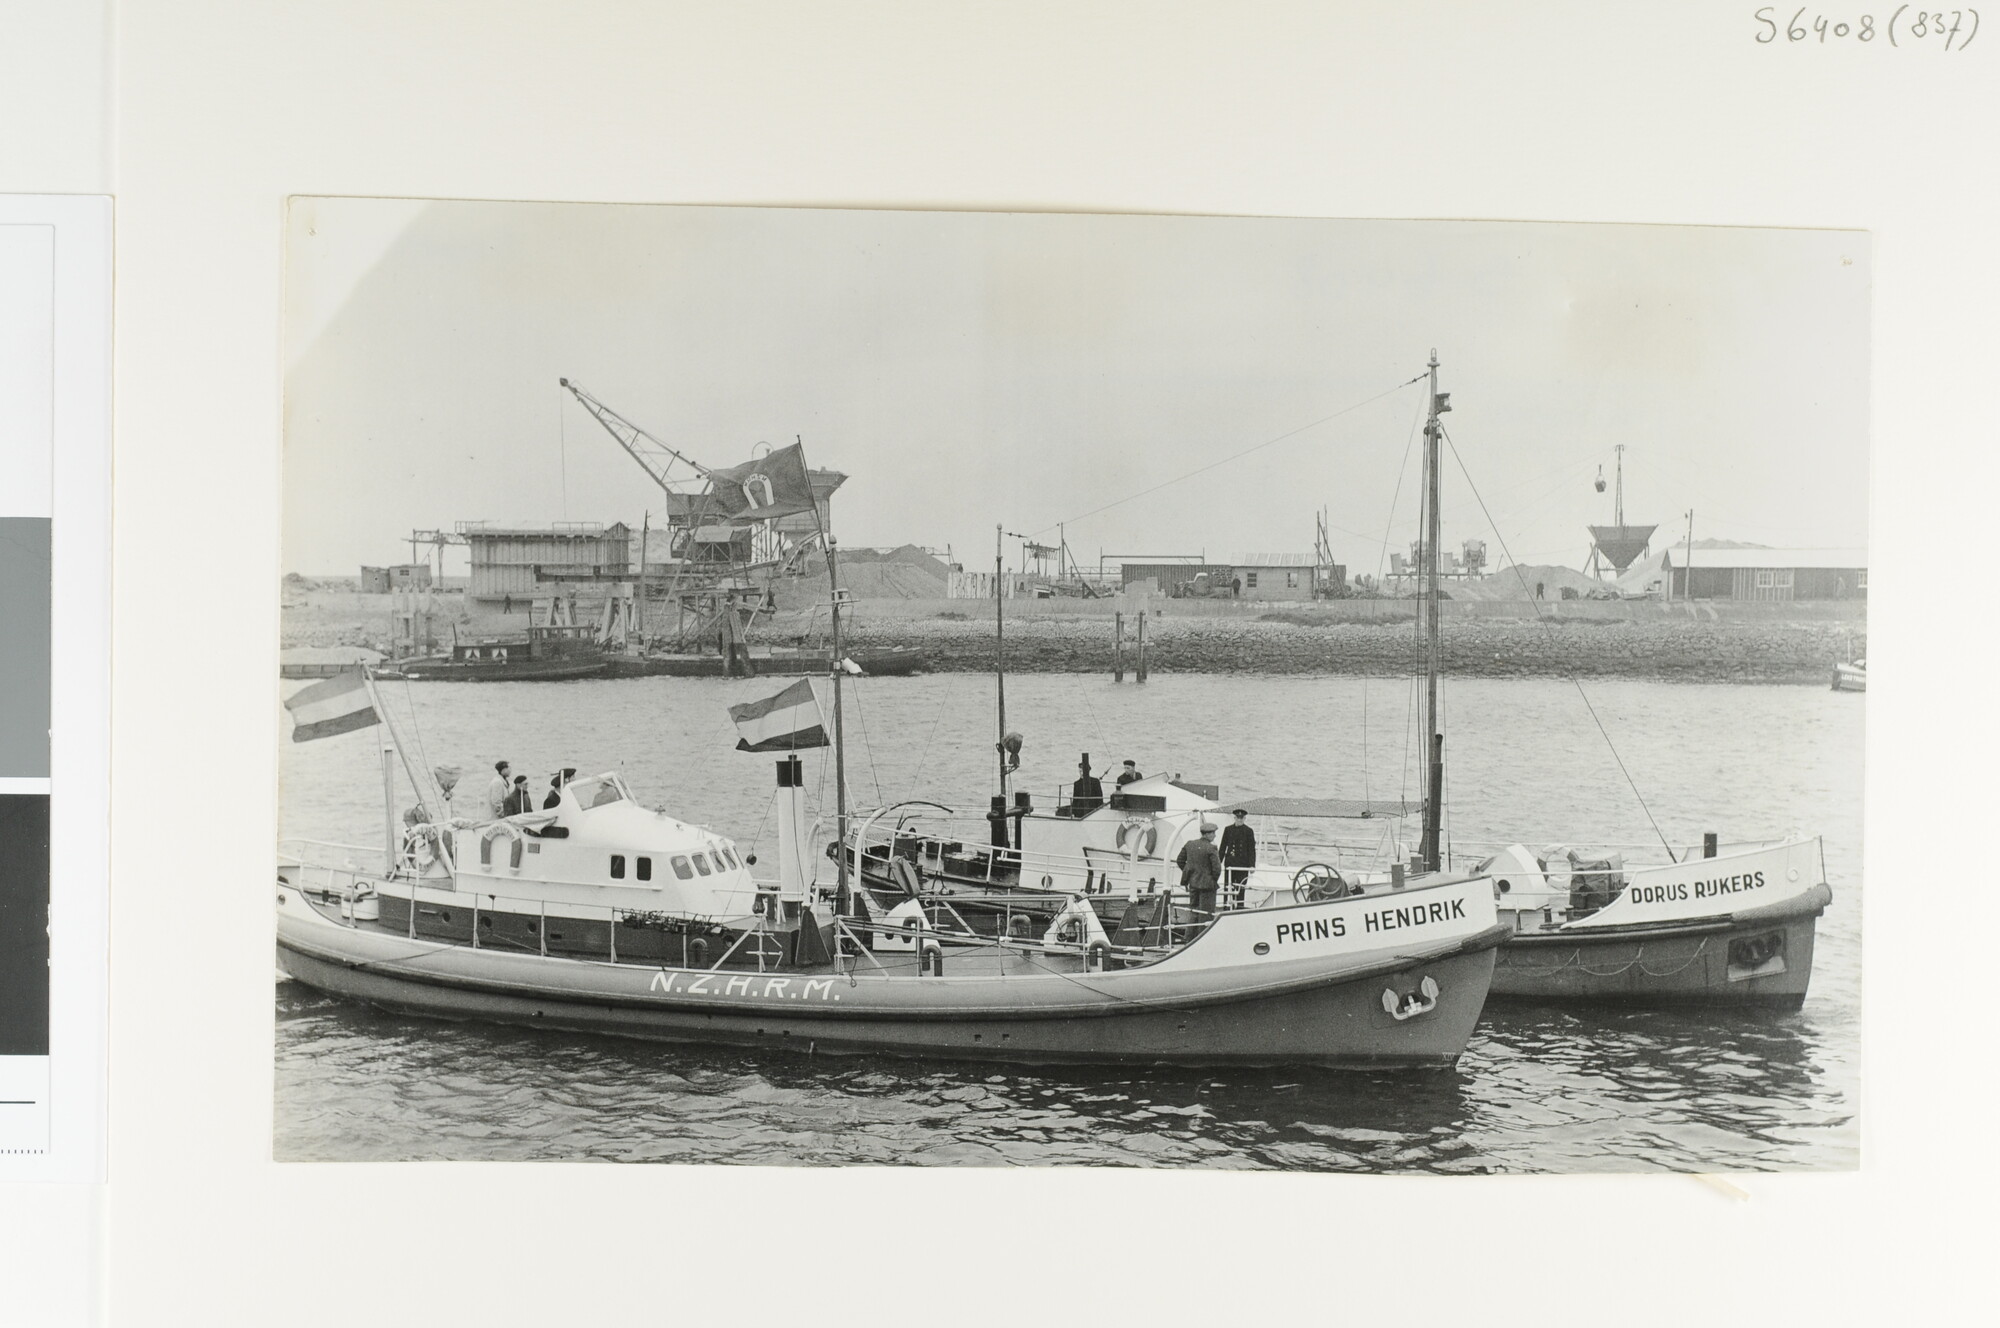 S.6408(0837); De 'oude' motorreddingboot 'Dorus Rijkers' en haar plaatsvervanger de mrb; foto